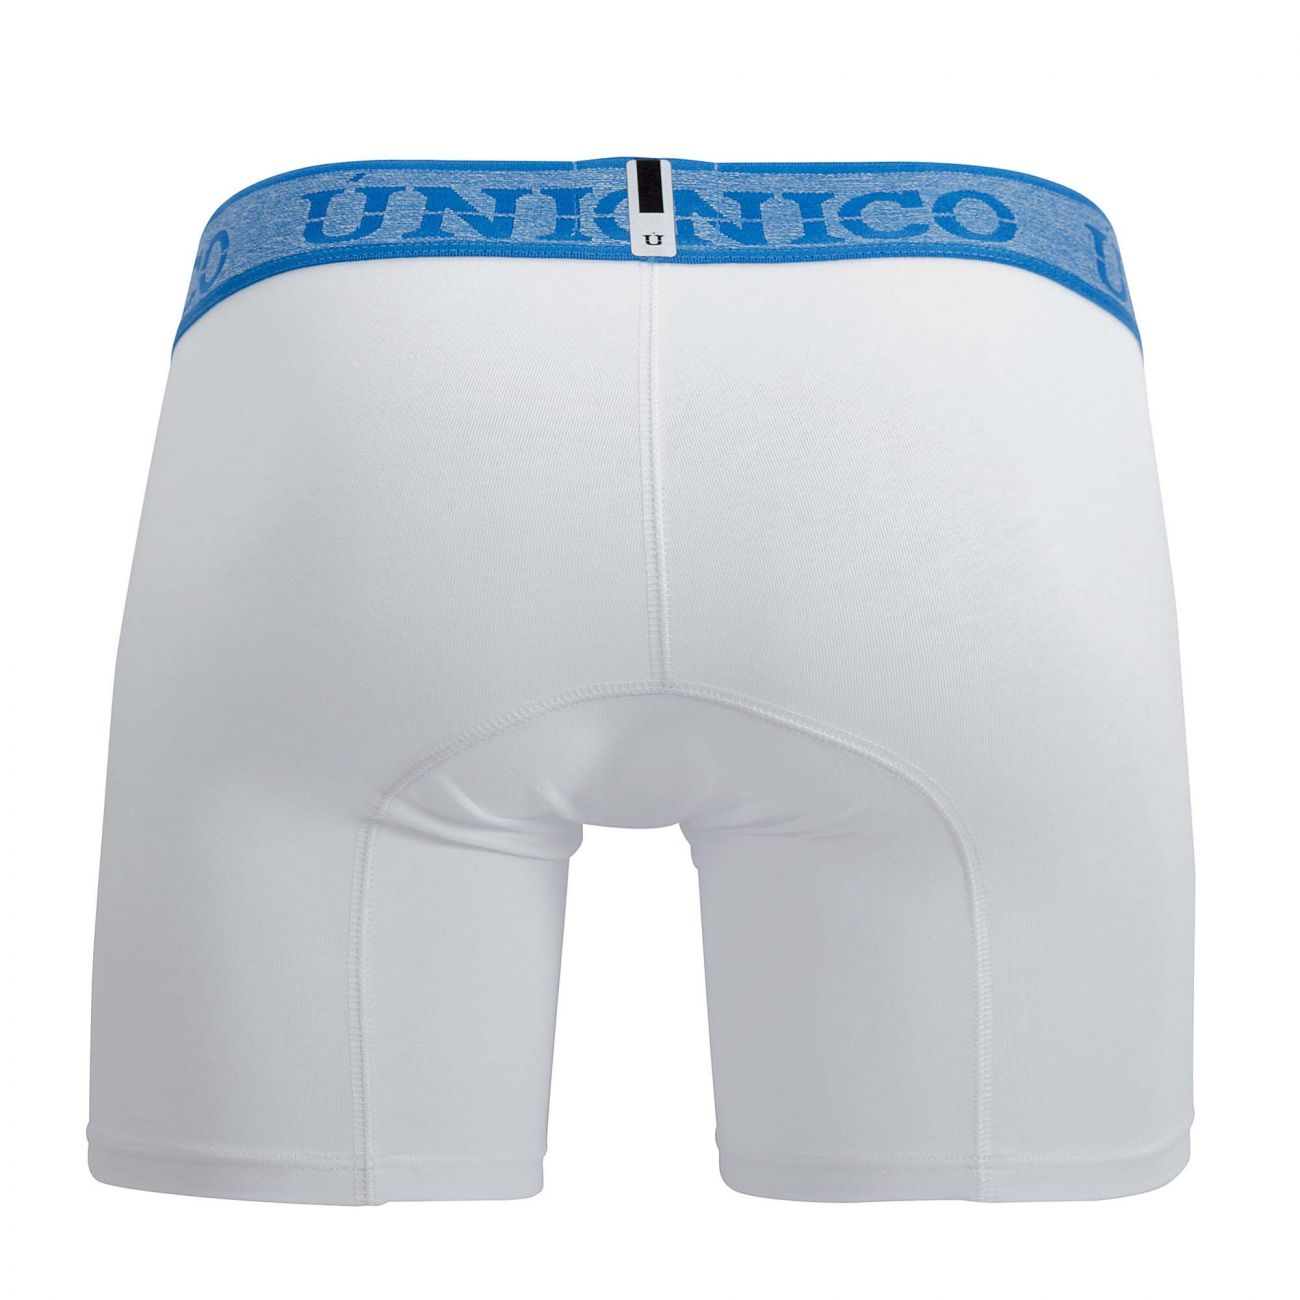 Unico 20160100202 Enchanted Boxer Briefs White